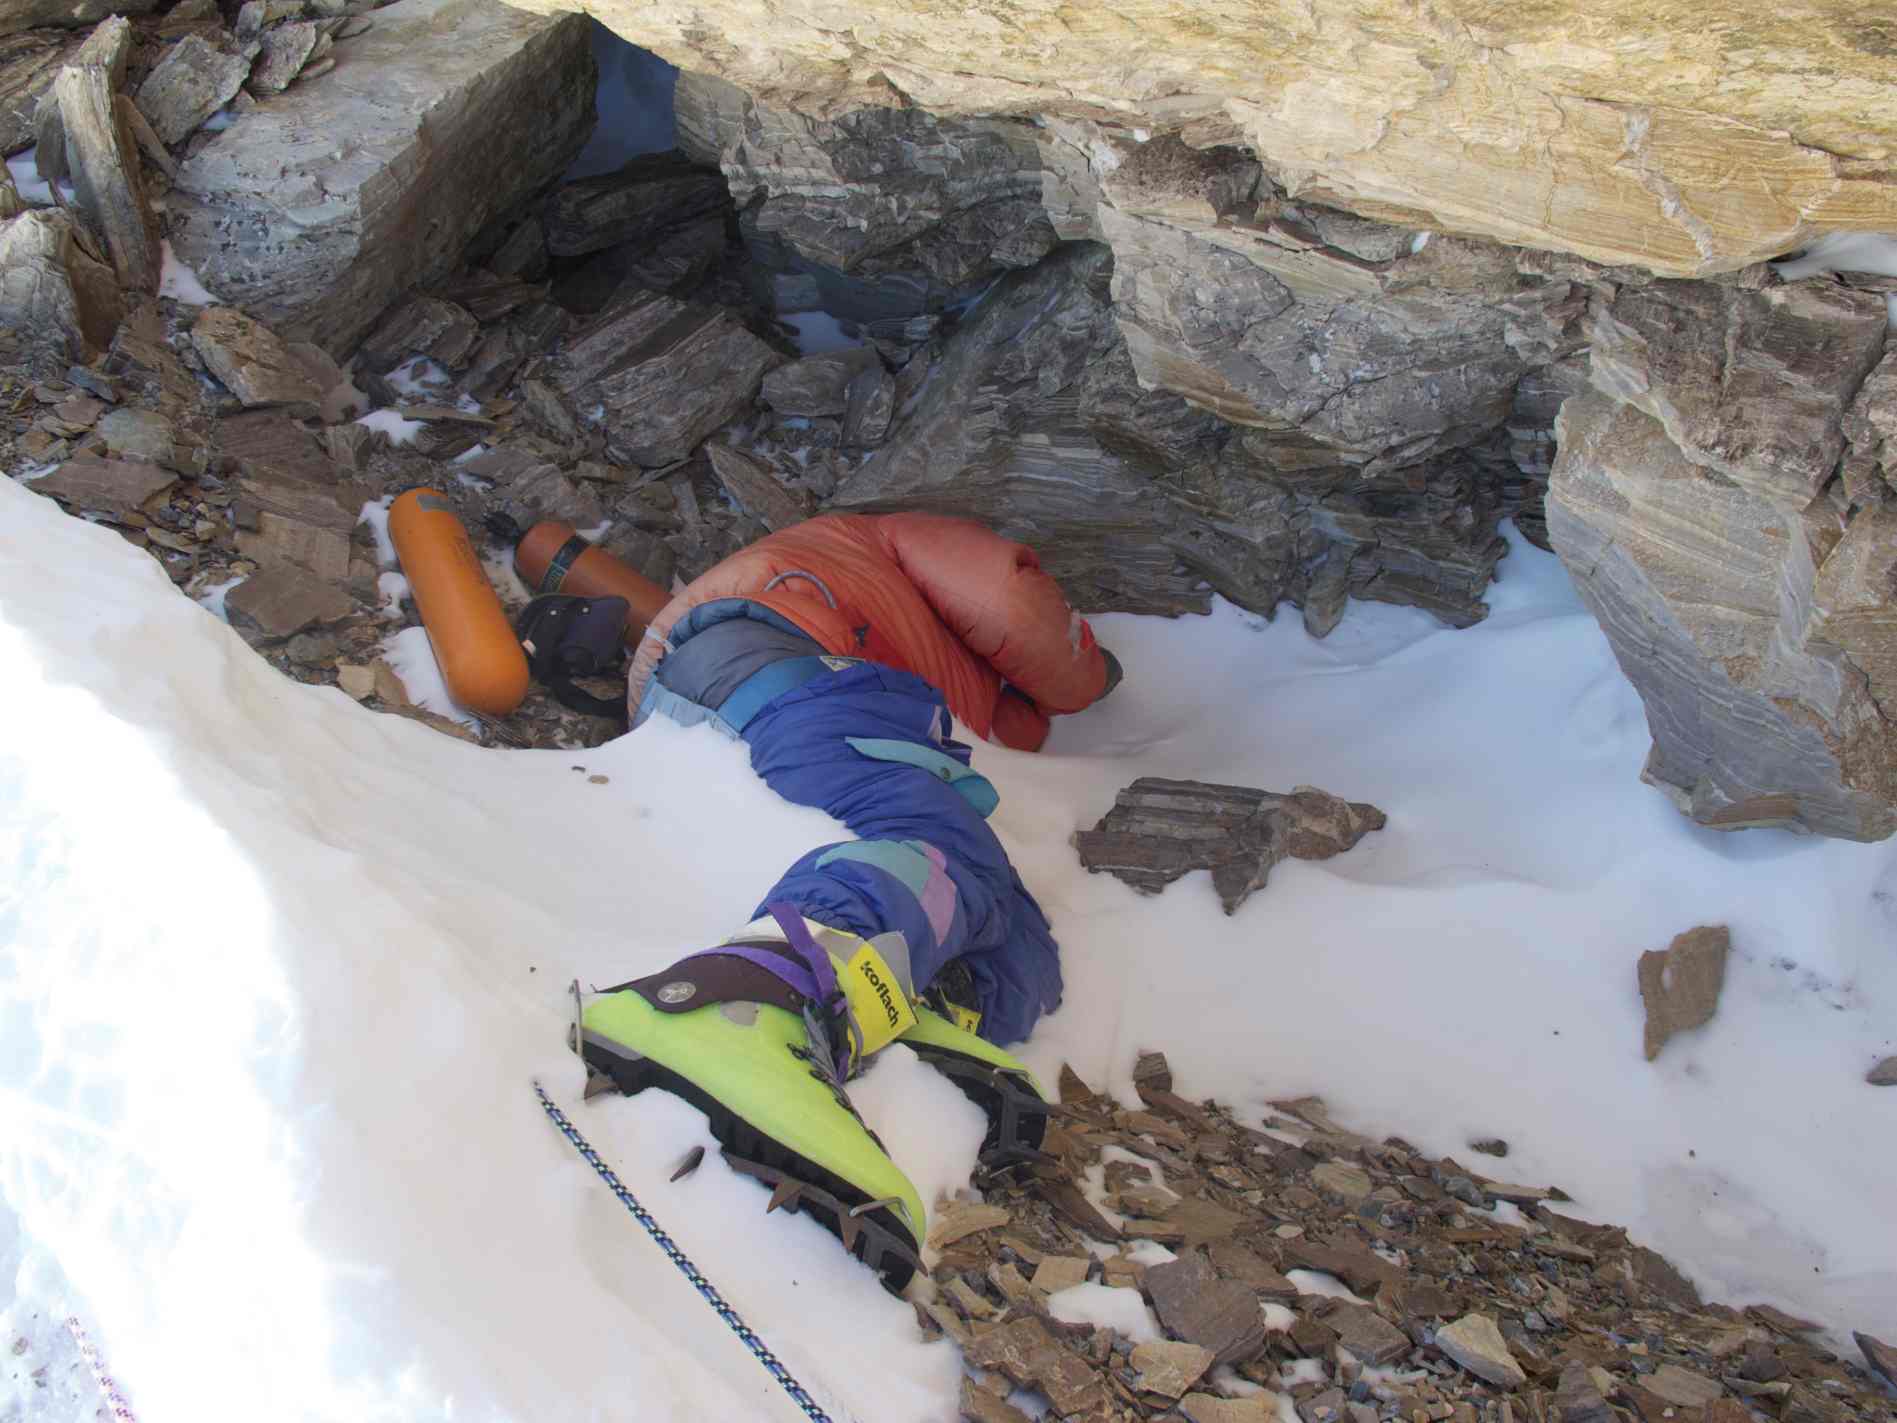 Foto vum "Green Boots", indesche Kletterer deen um Nordoste Ridge vum Mount Everest am 1996 gestuerwen ass